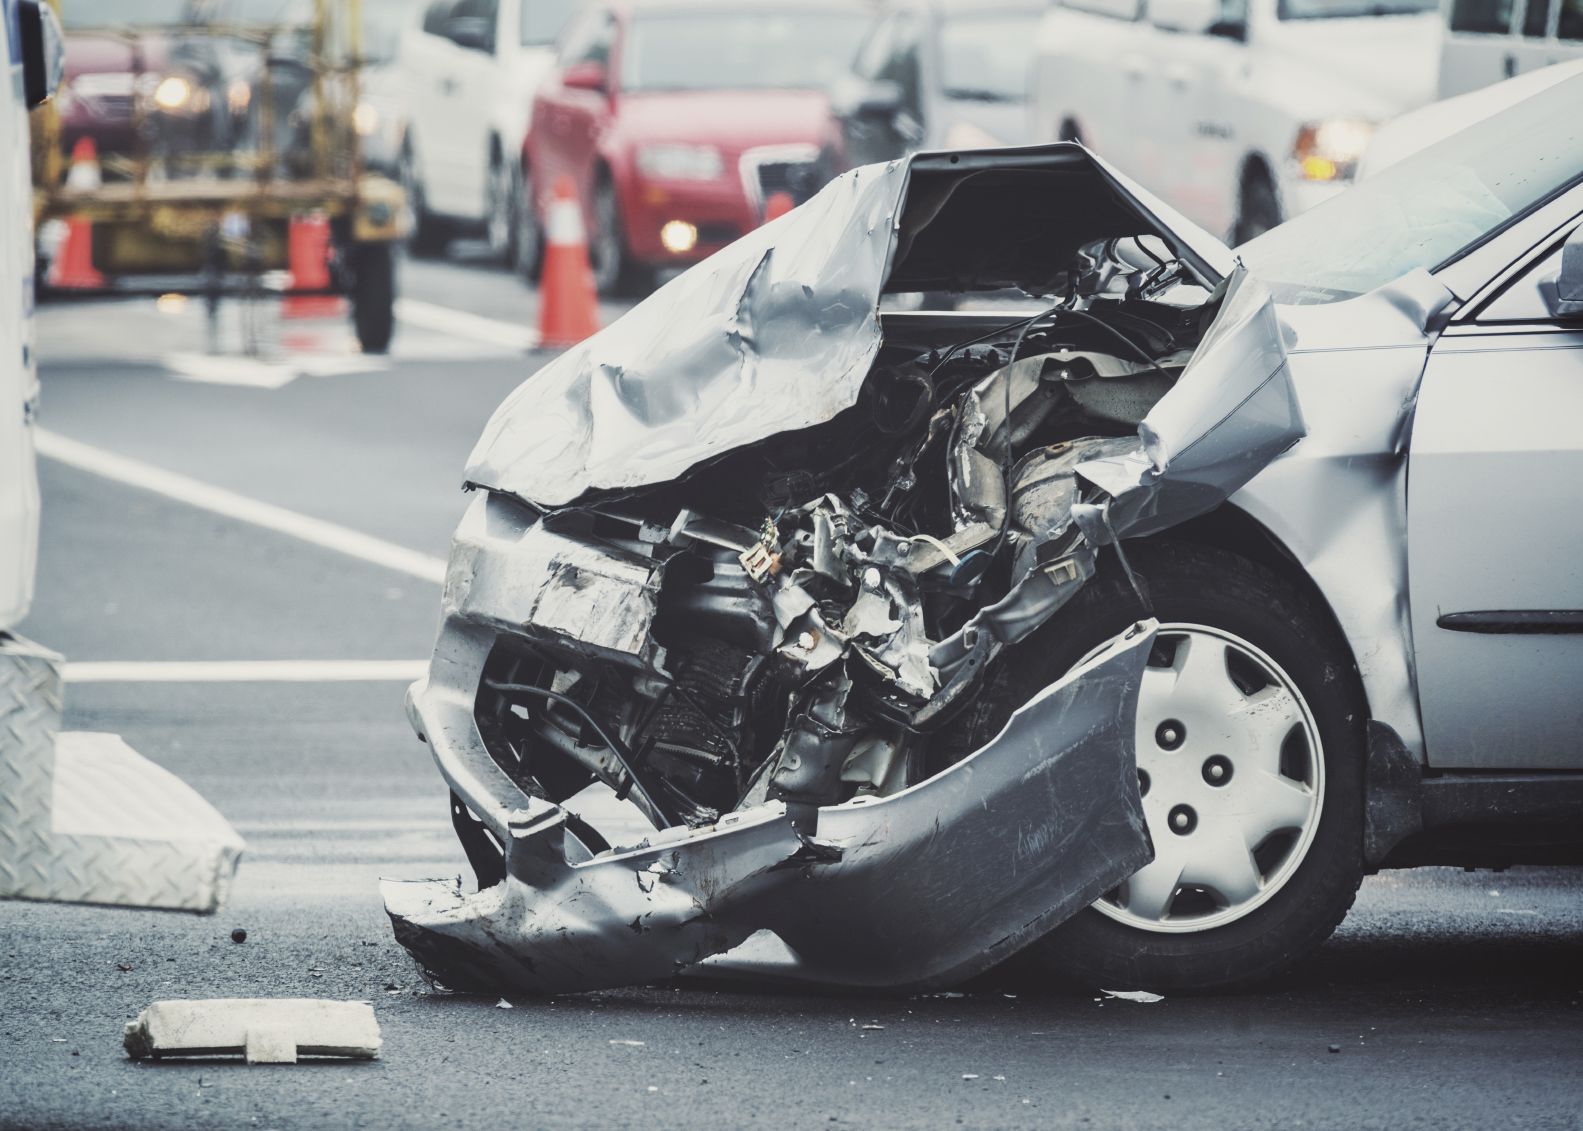 Automobile Accident Attorney Utah